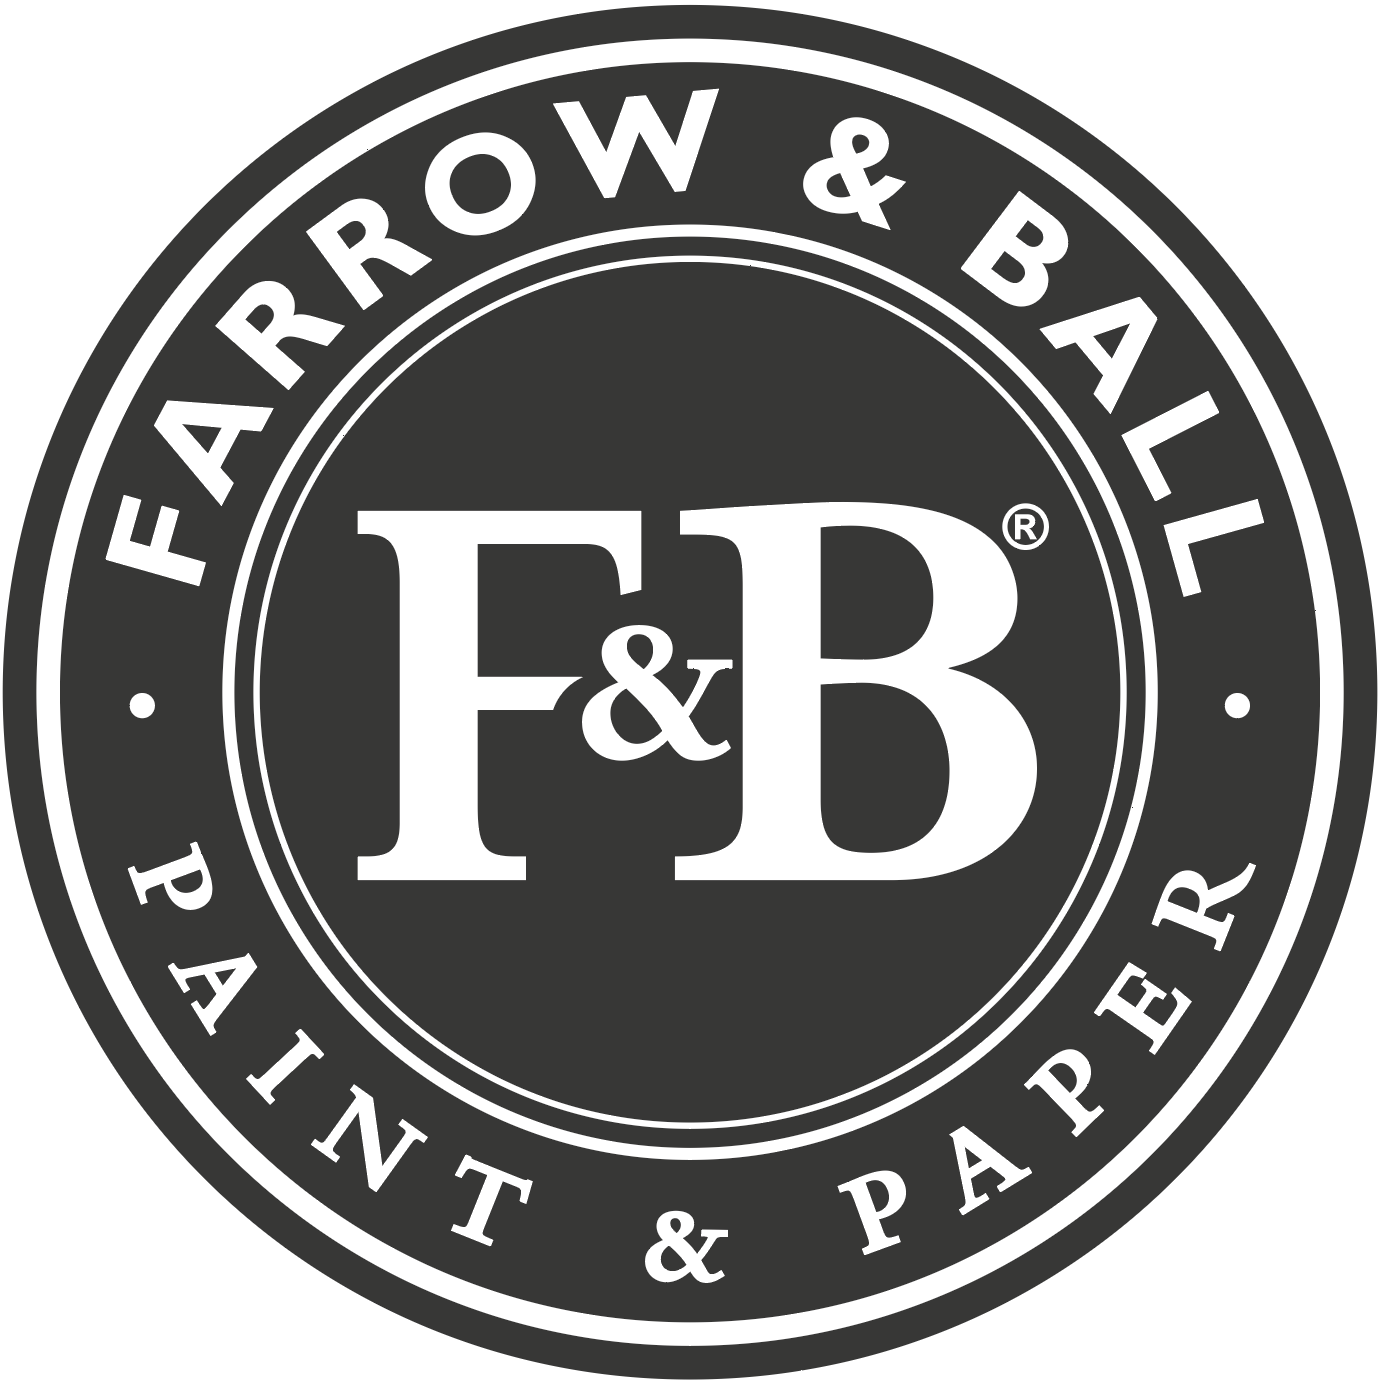 Farrow & Ball, paint & paper